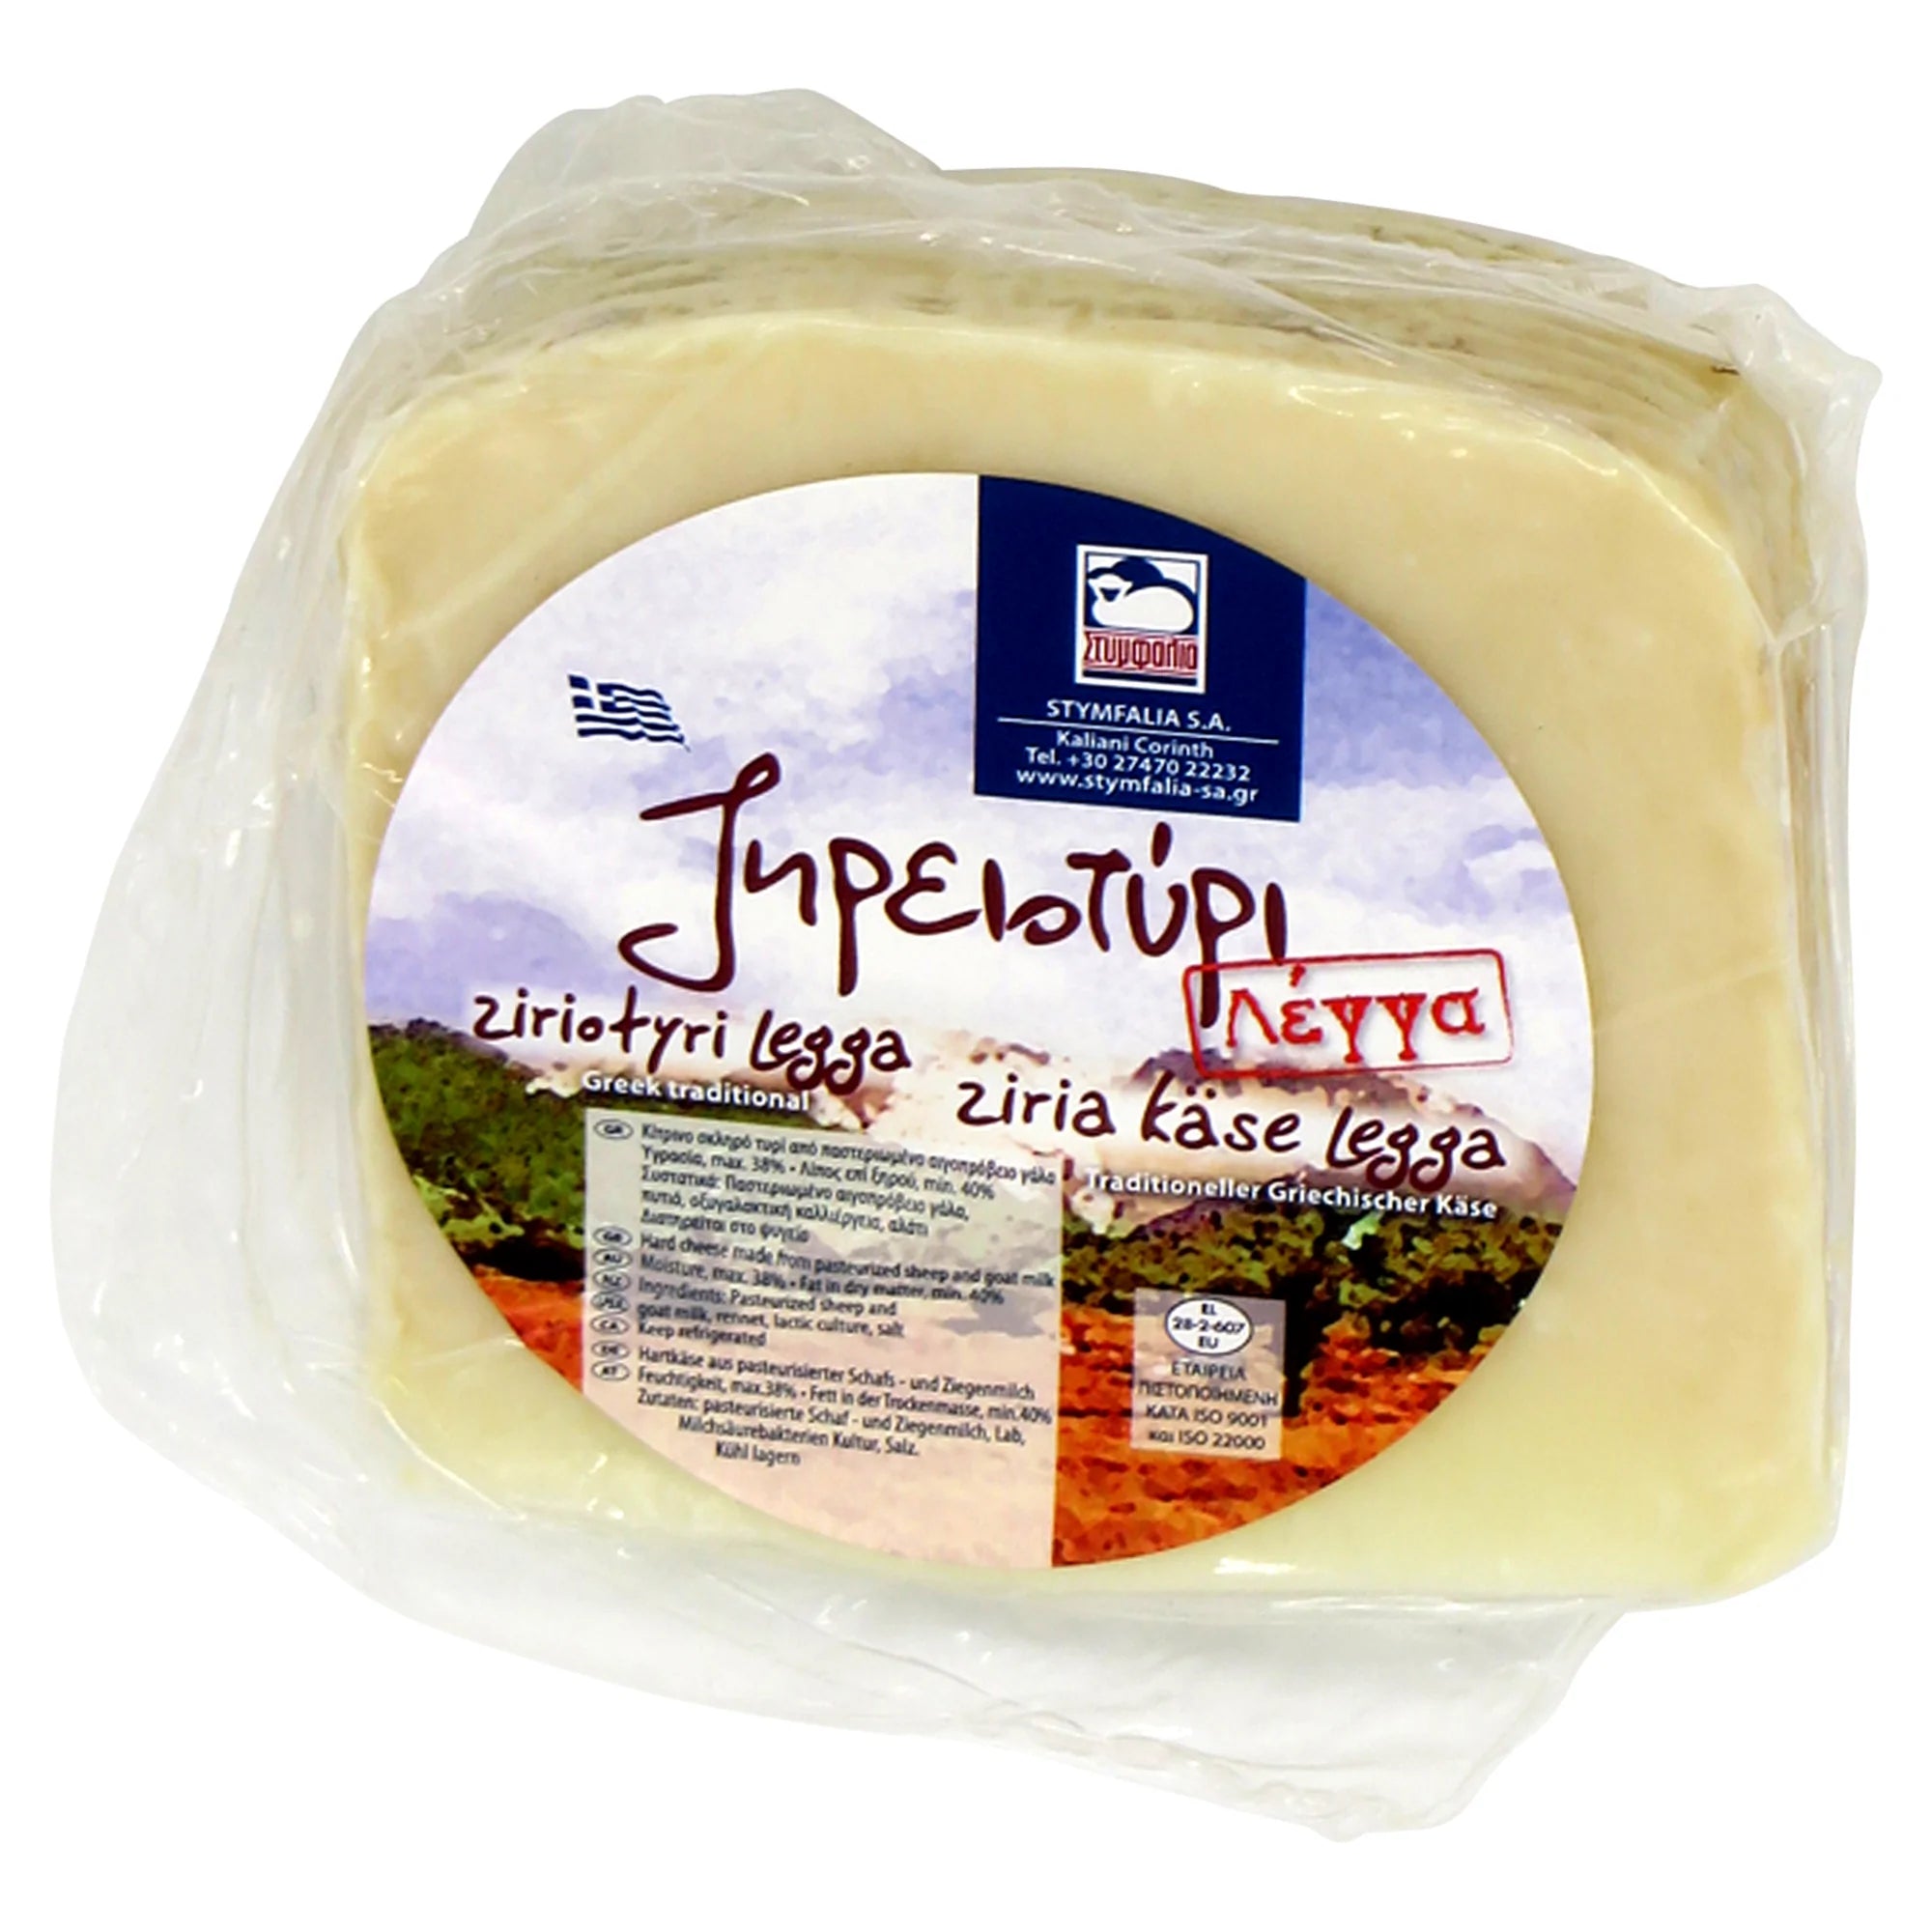 STYMFALIA Kefalotiri Cheese Piece / 1kg